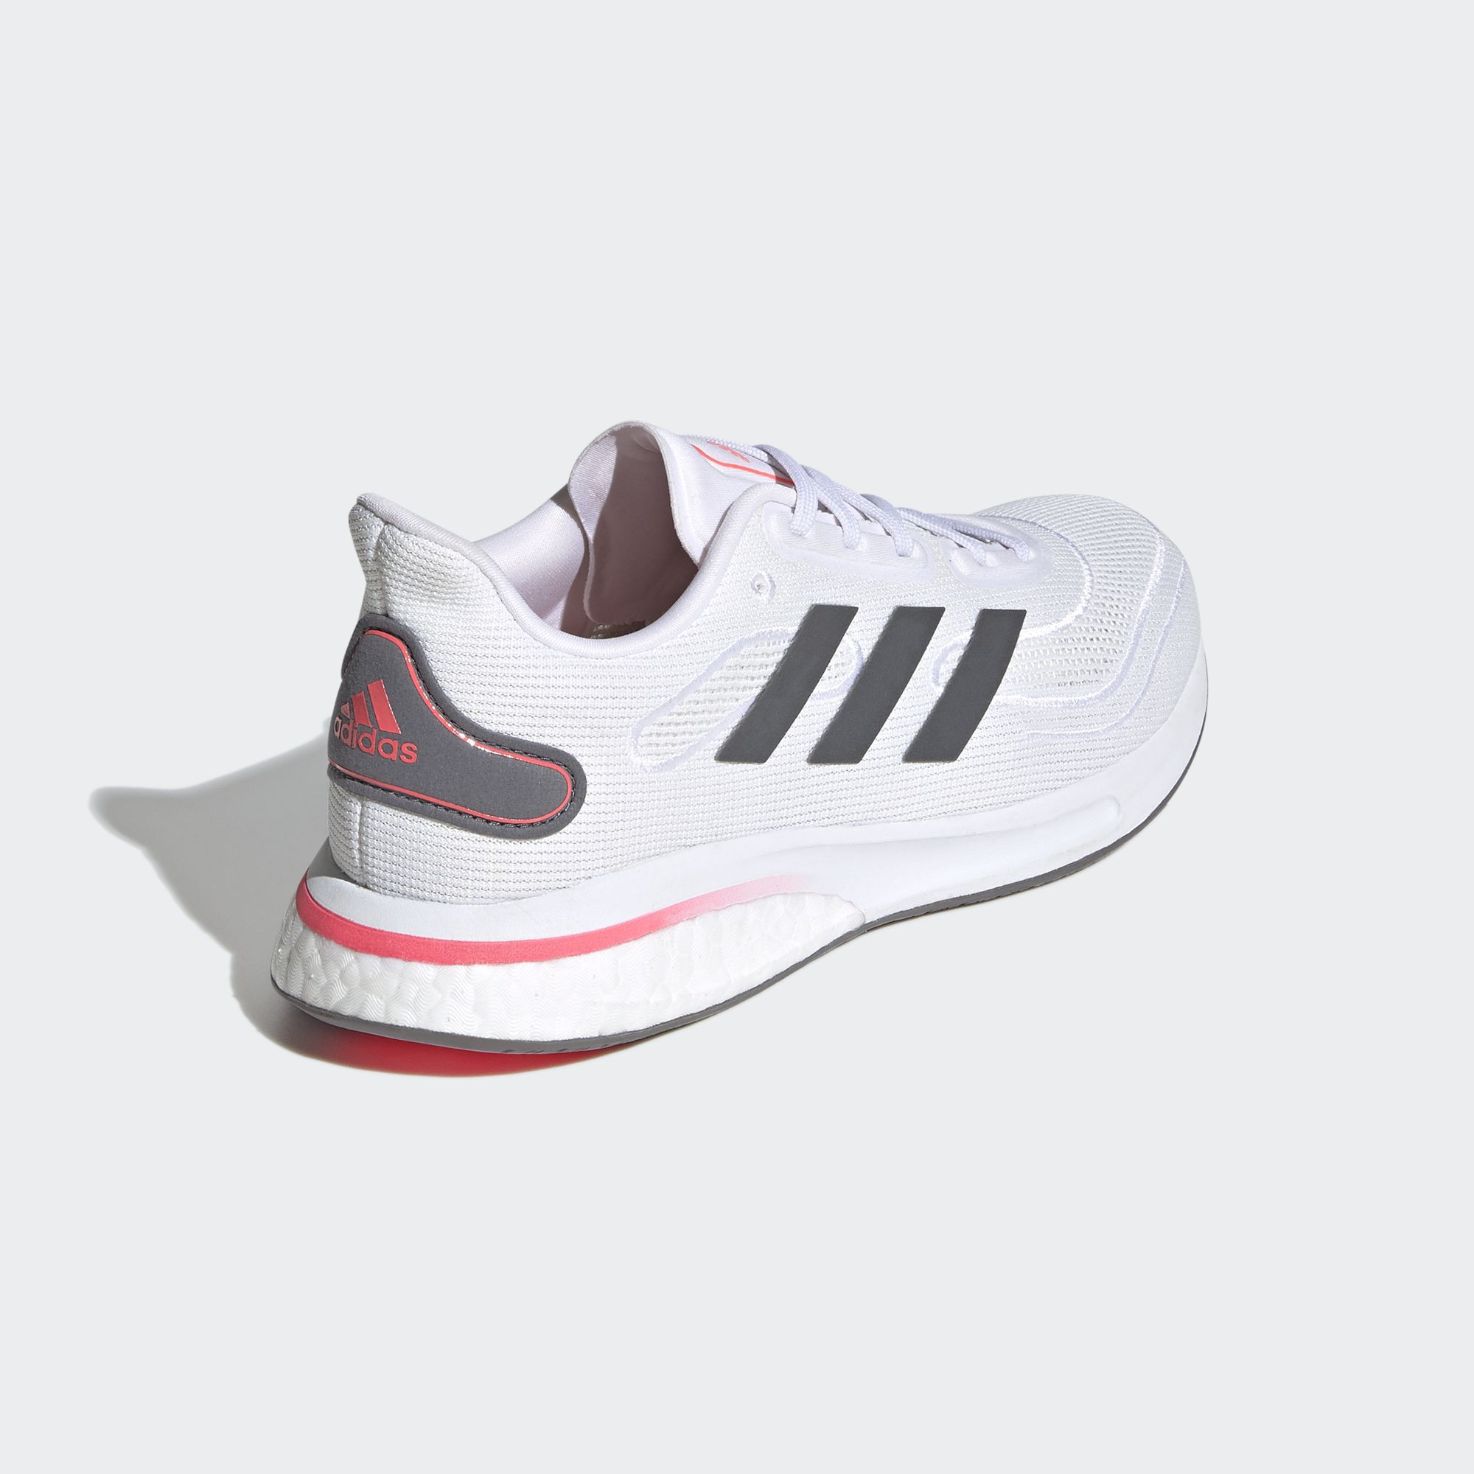 adidas supernova best women's running shoes